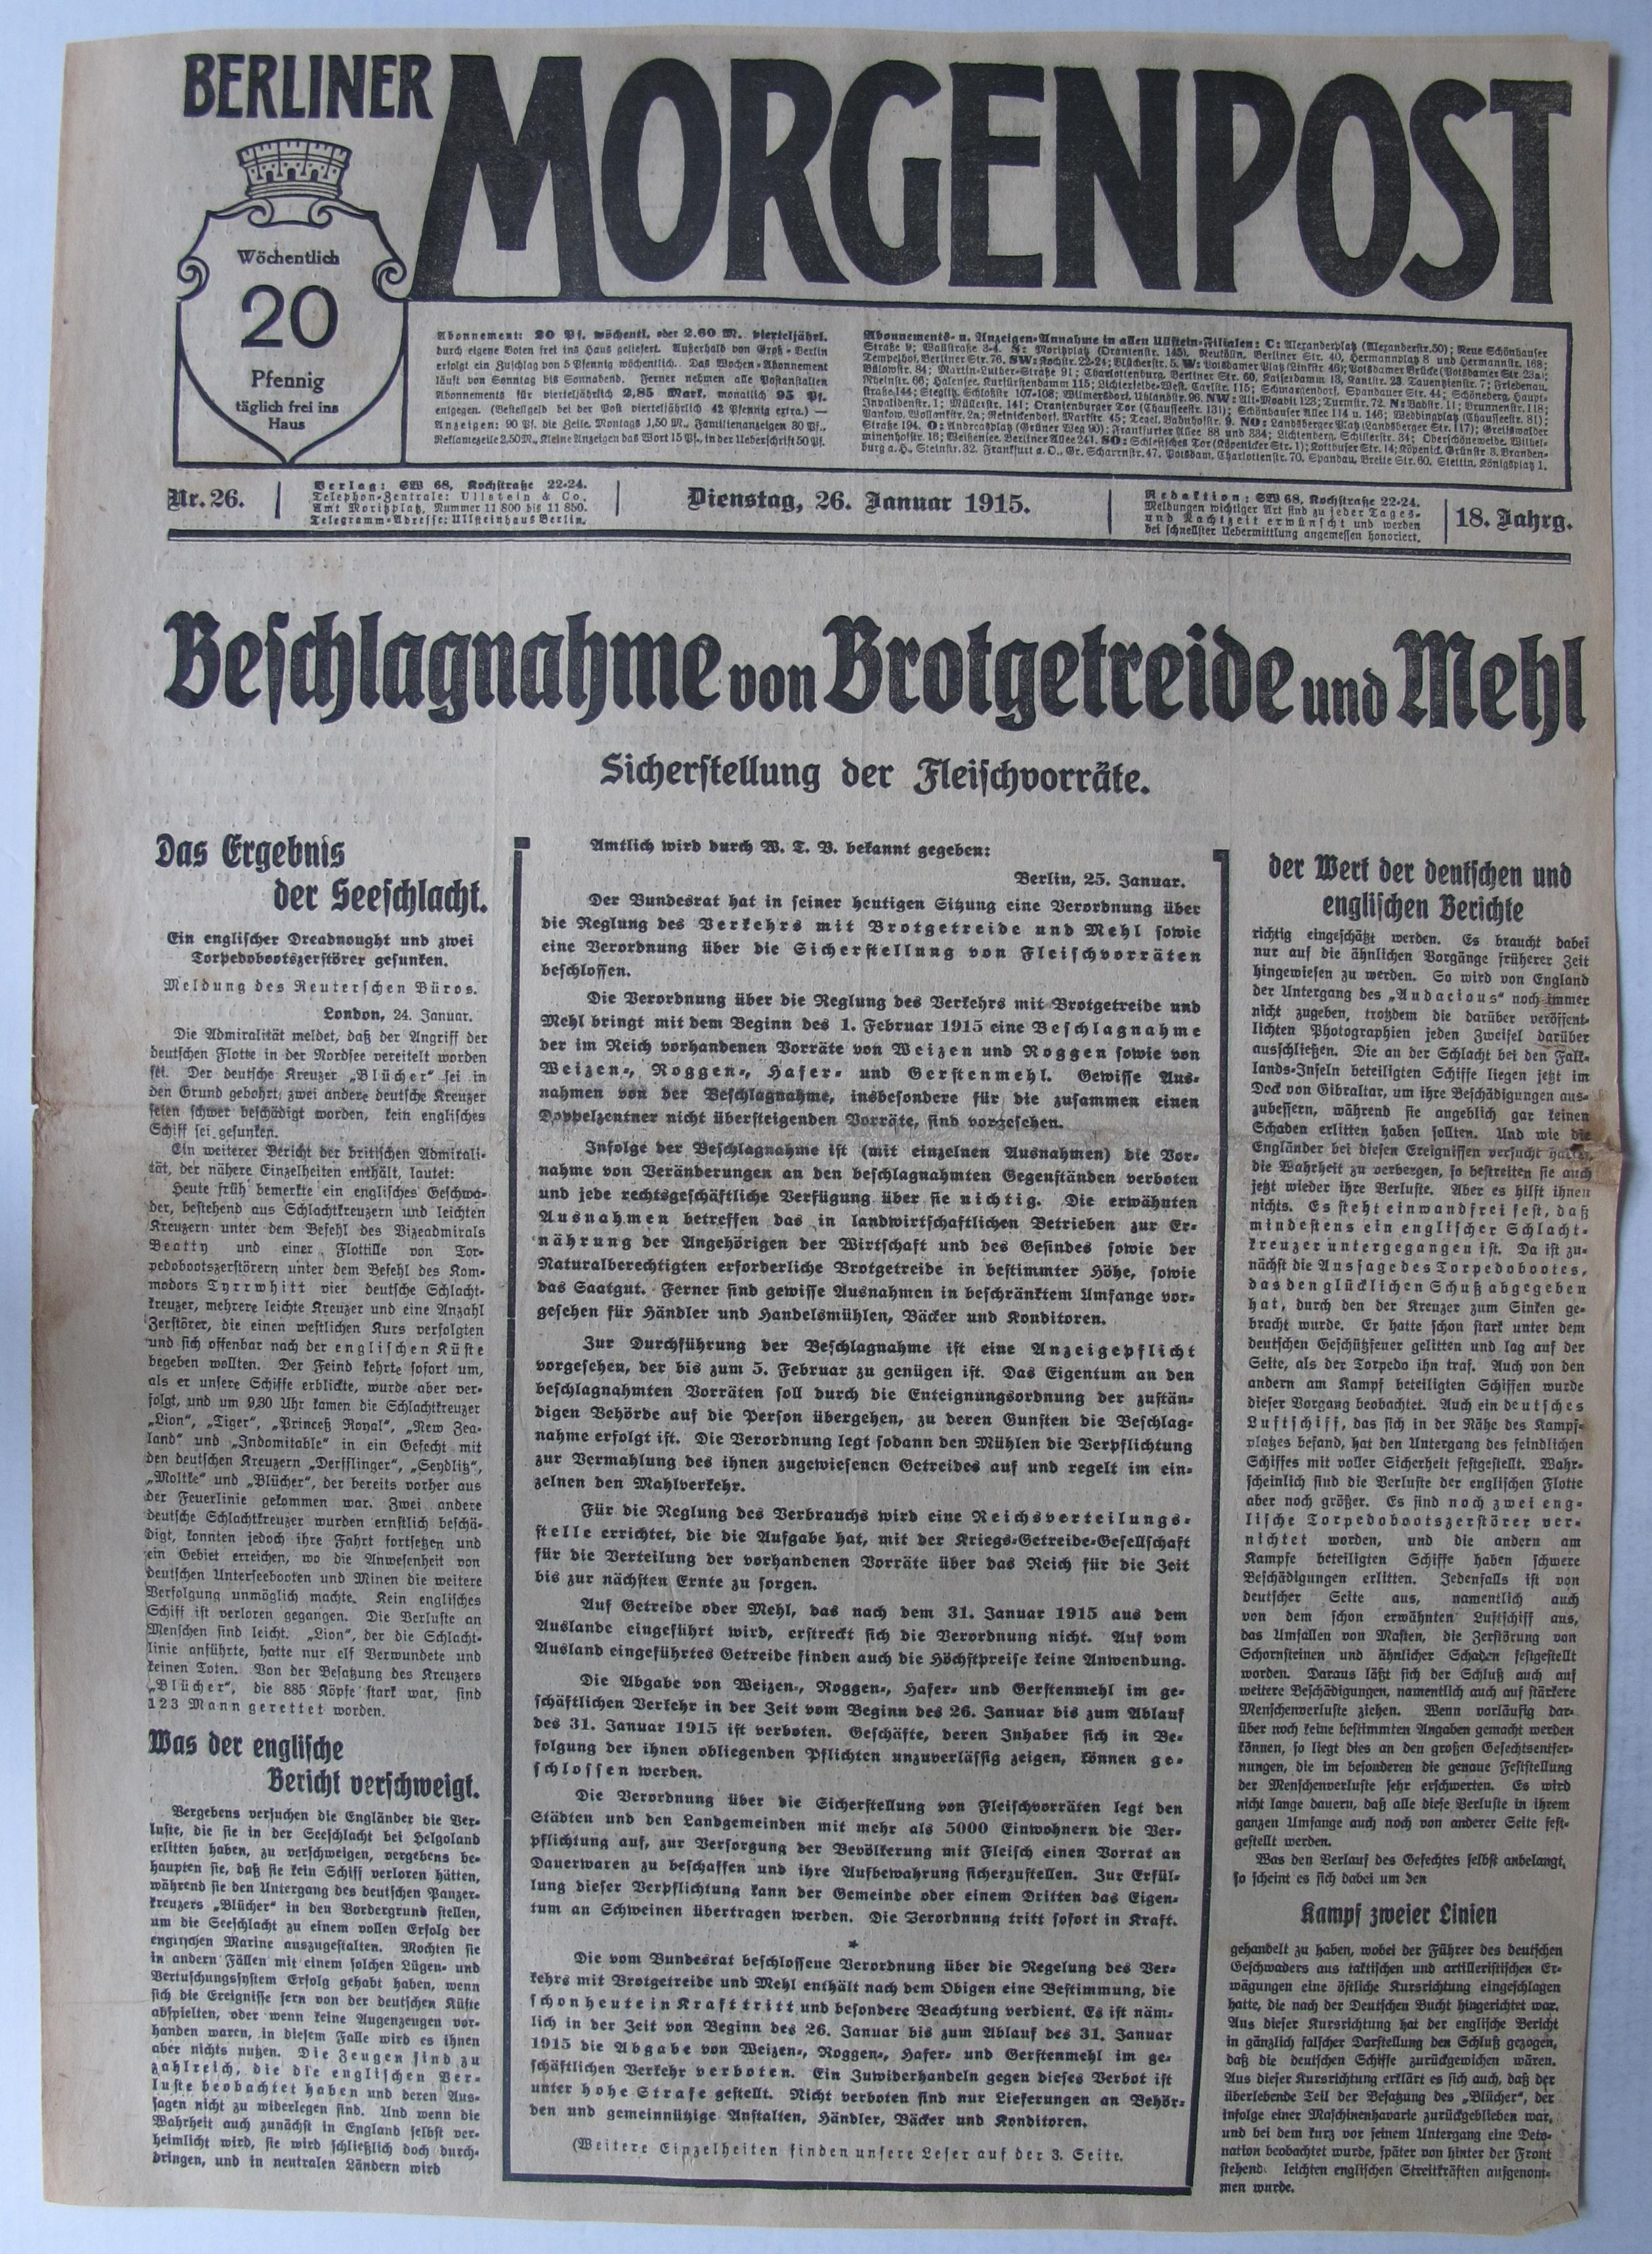 [Tageszeitung "Berliner Morgenpost", 26. Januar 1915]